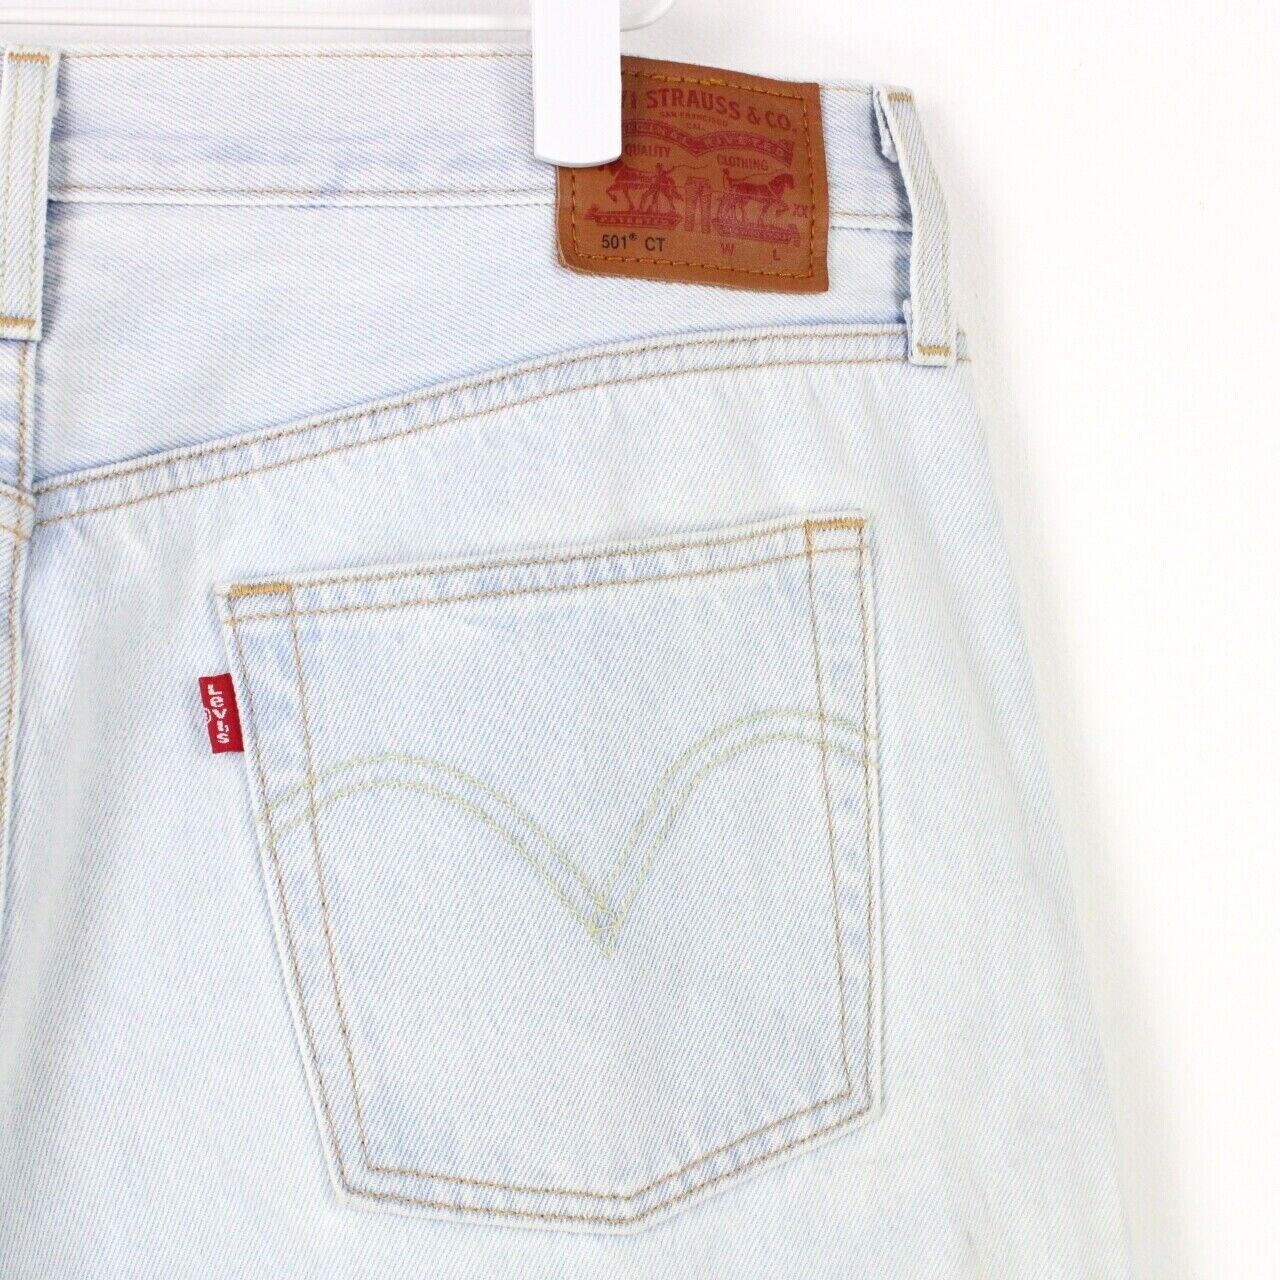  Levis 501 Womens Jeans